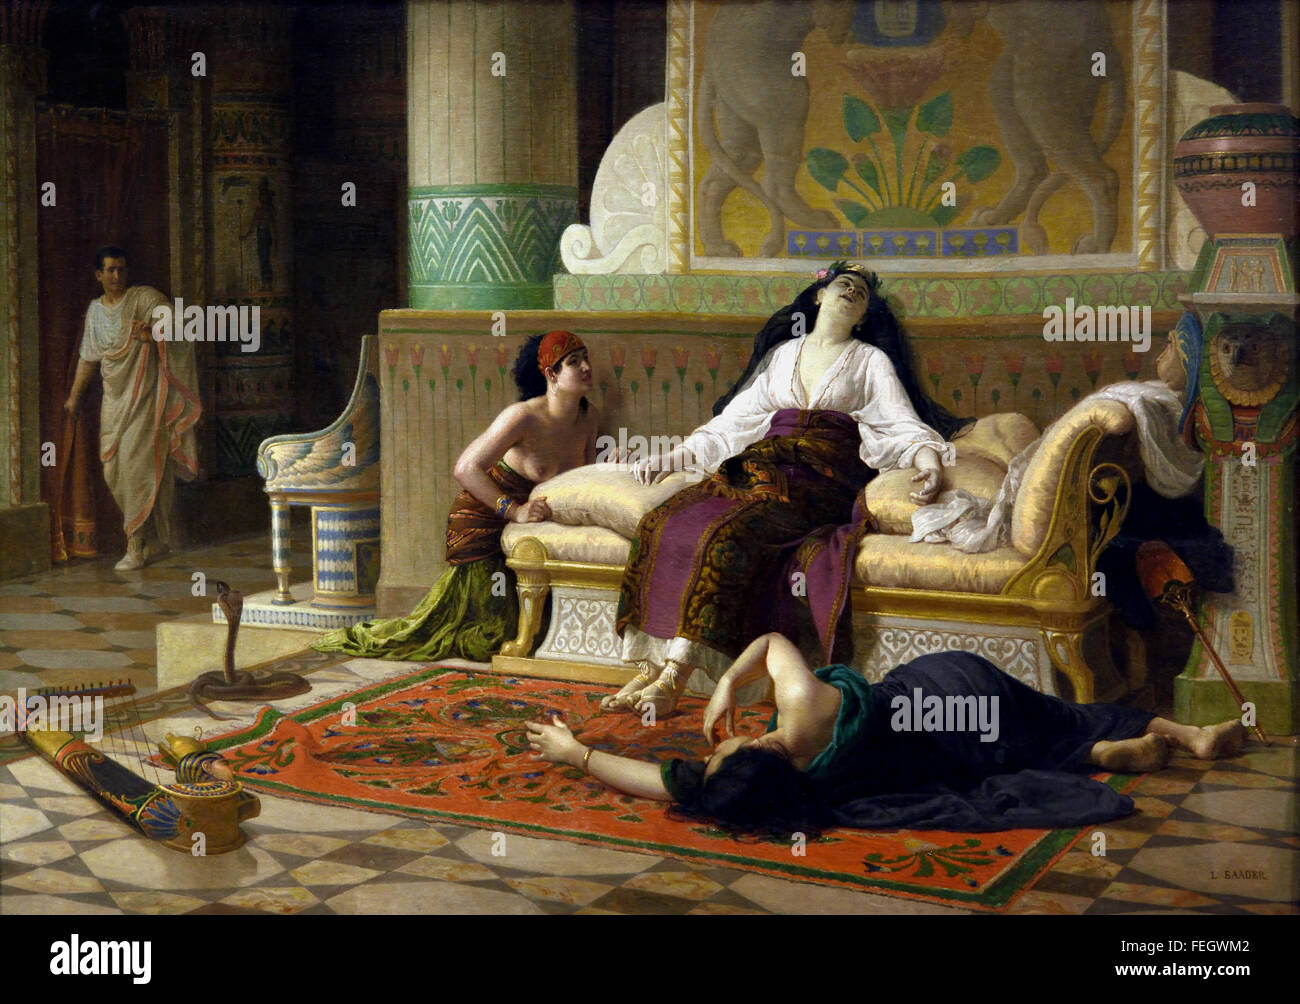 La muerte de Cleopatra 1899 Louis Marie Baader 1828 - 1920 Francia ( Cleopatra VII Philopator 69 - 30 BC se conoce en la historia simplemente como Cleopatra, fue el último activo faraón de Egipto Ptolemaico ) Foto de stock